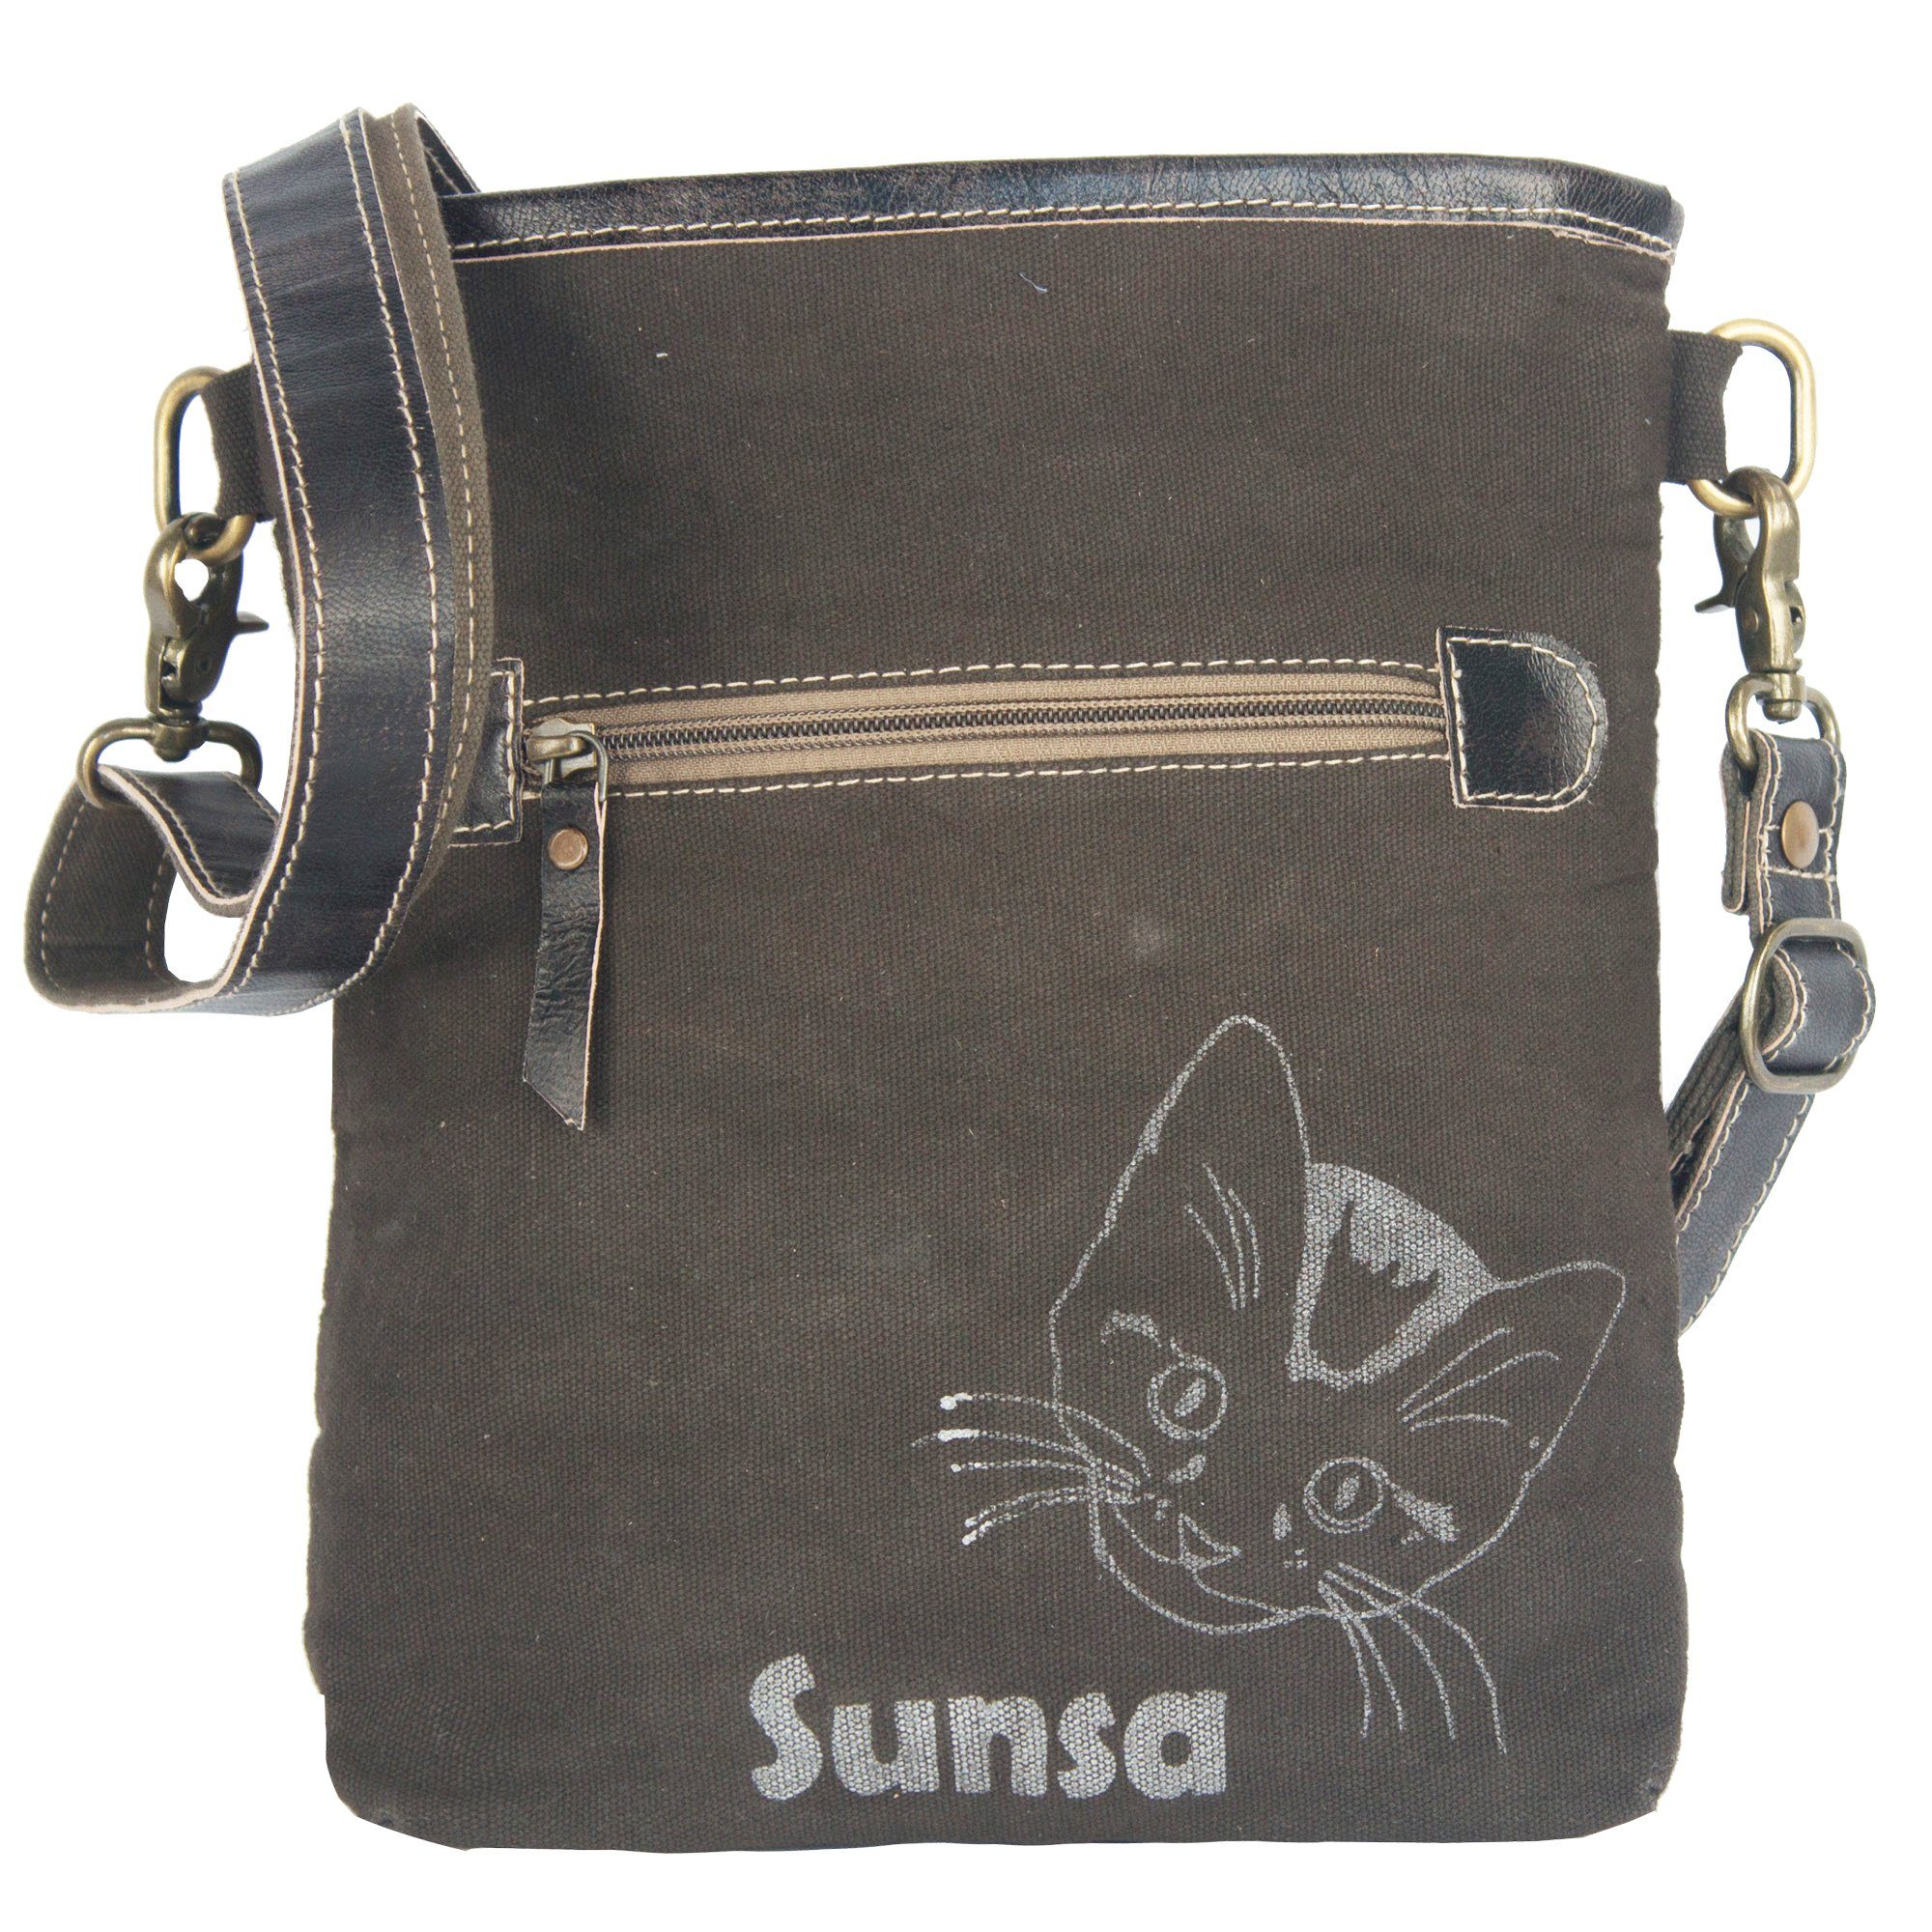 Sunsa Umhängetasche kleine Canvas (Katzenliebhaber), Umhängetasche Katzen für Damen/ Teenager Katzen-Fan für Aufdruck